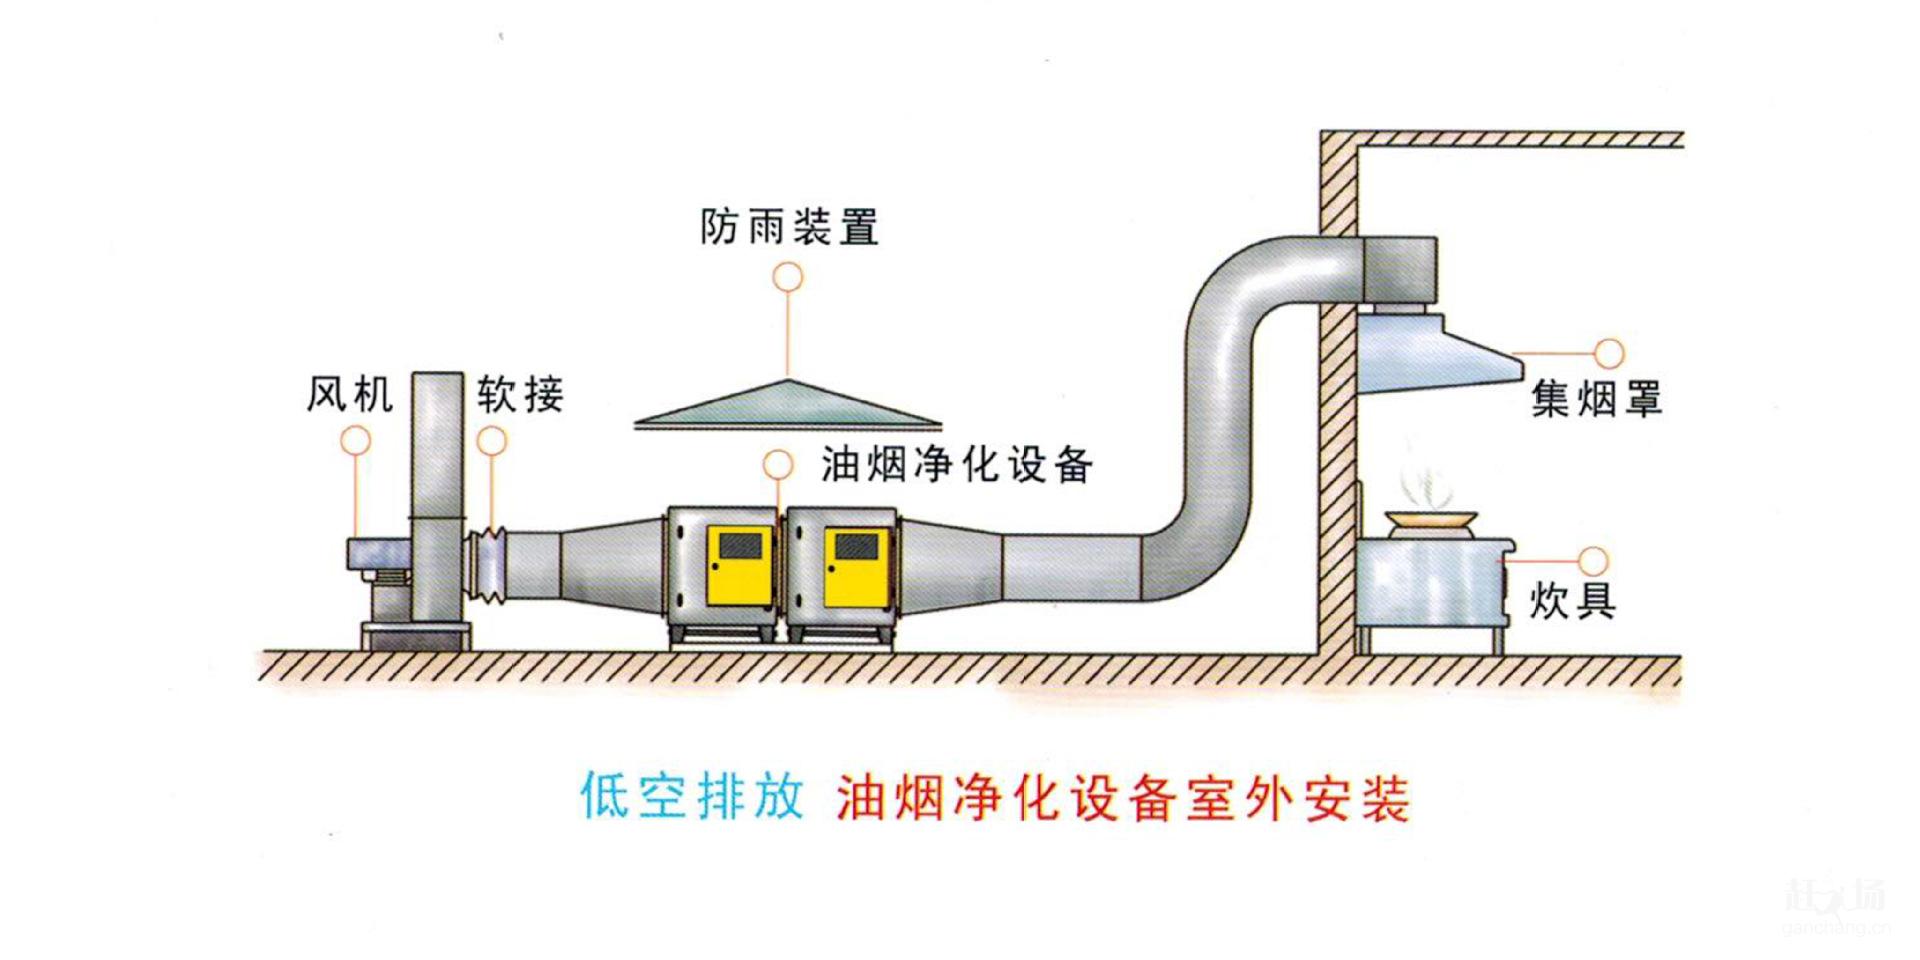 肇庆市雍隆厨房设备承接大型商用厨房工程通风工程新风工程设计安